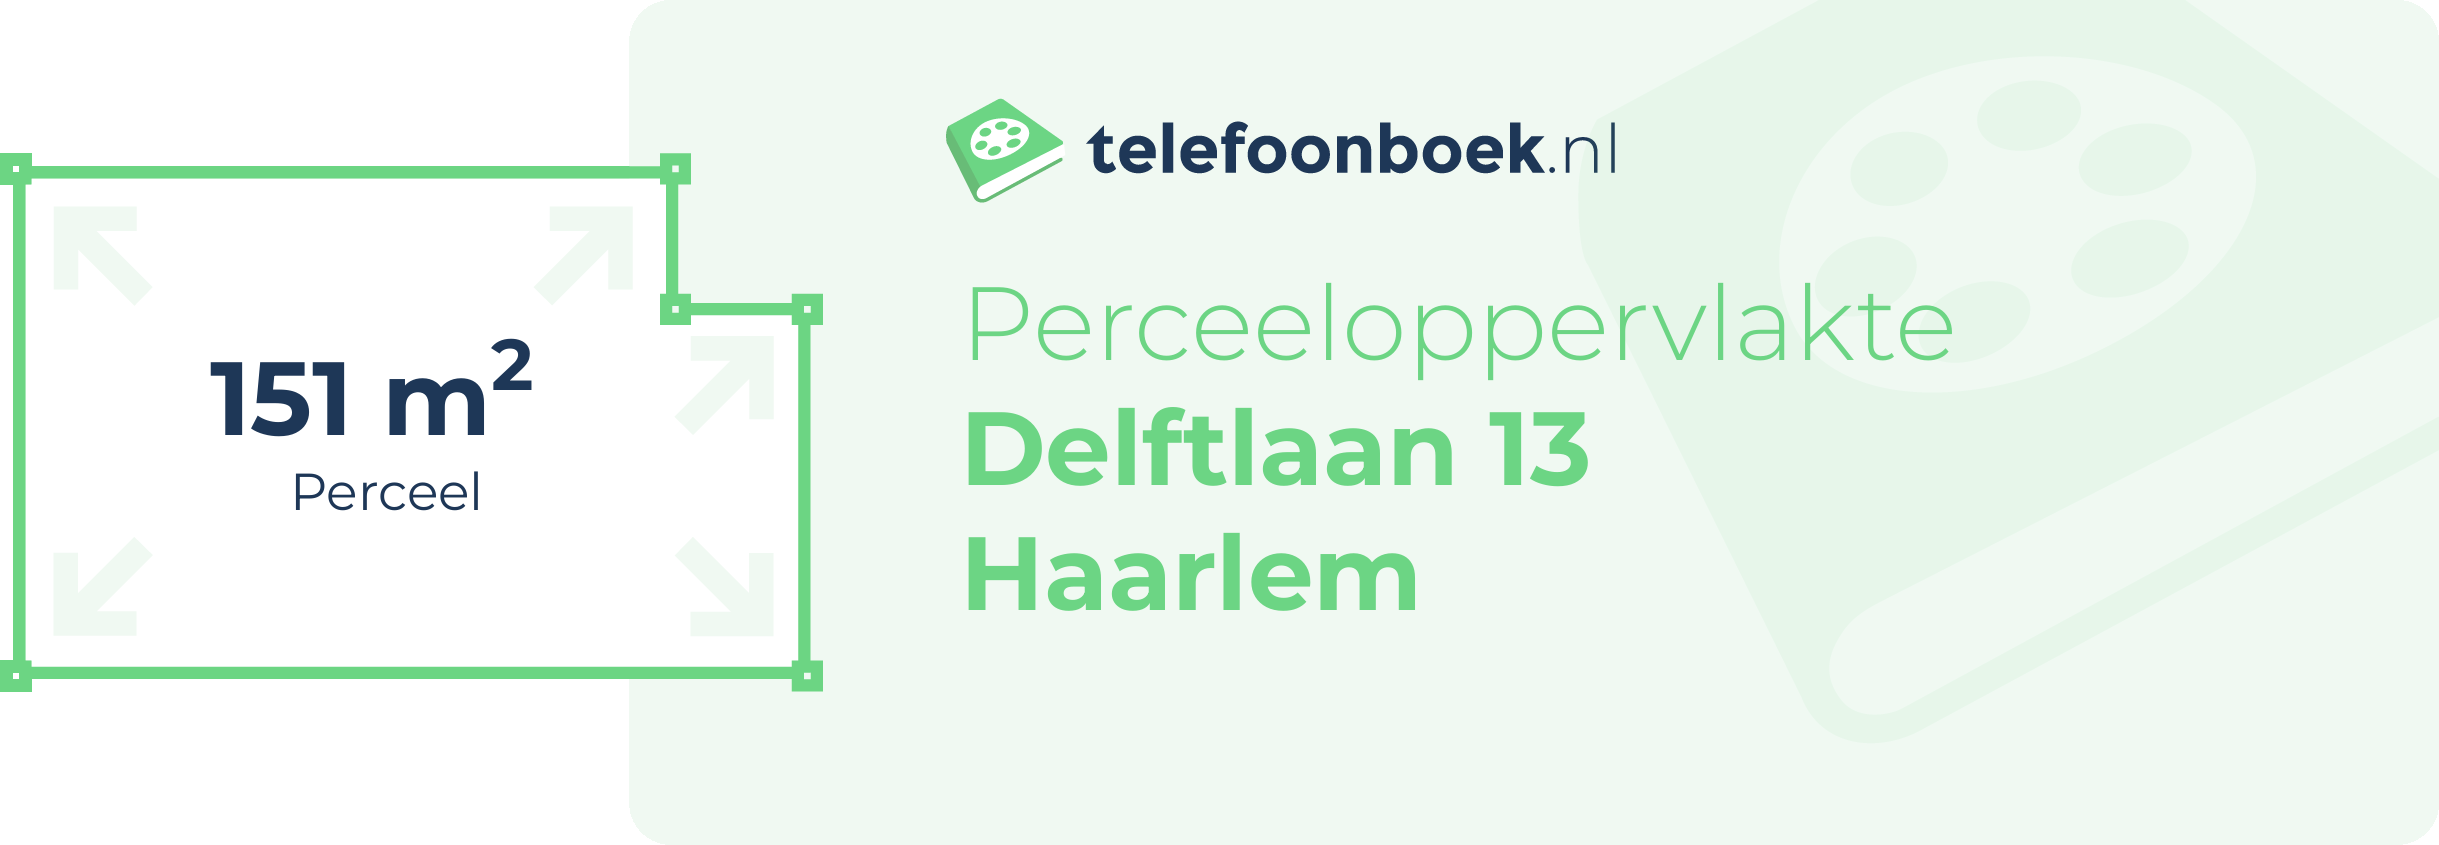 Perceeloppervlakte Delftlaan 13 Haarlem